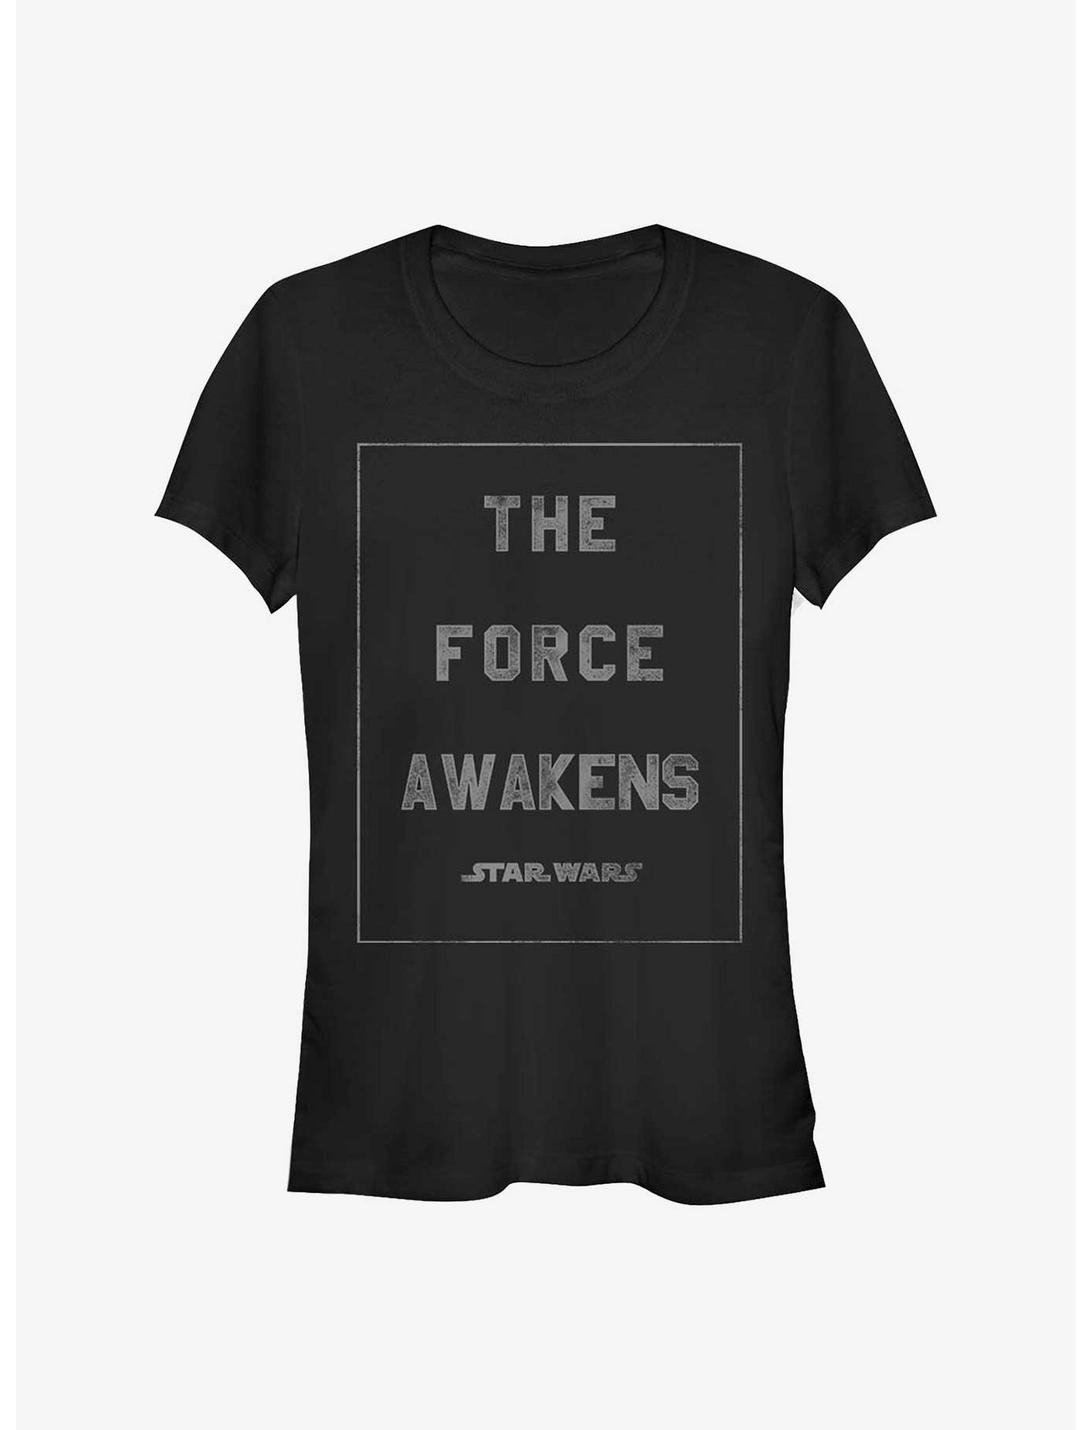 Star Wars Heroine Awaken Girls T-Shirt, BLACK, hi-res